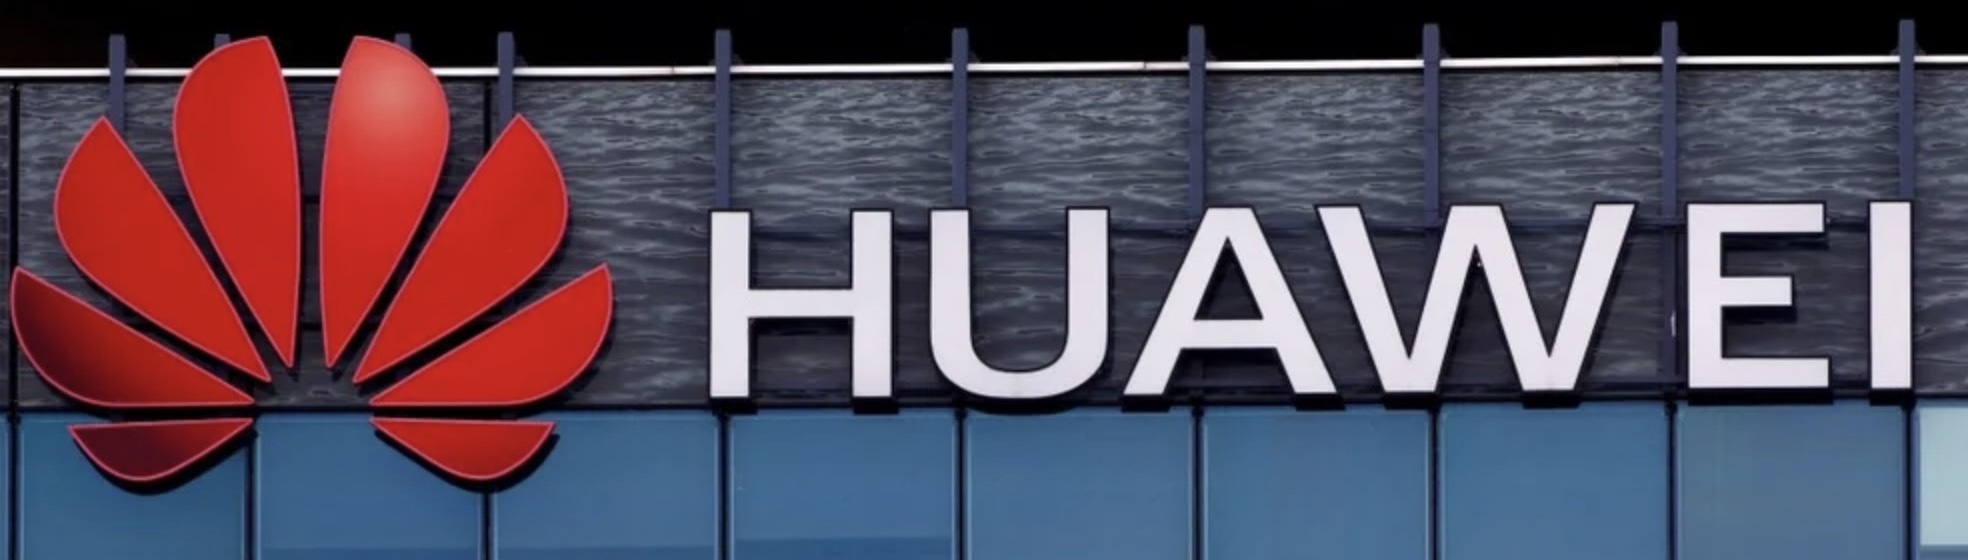 Huawei     Intel, AMD  Qualcomm